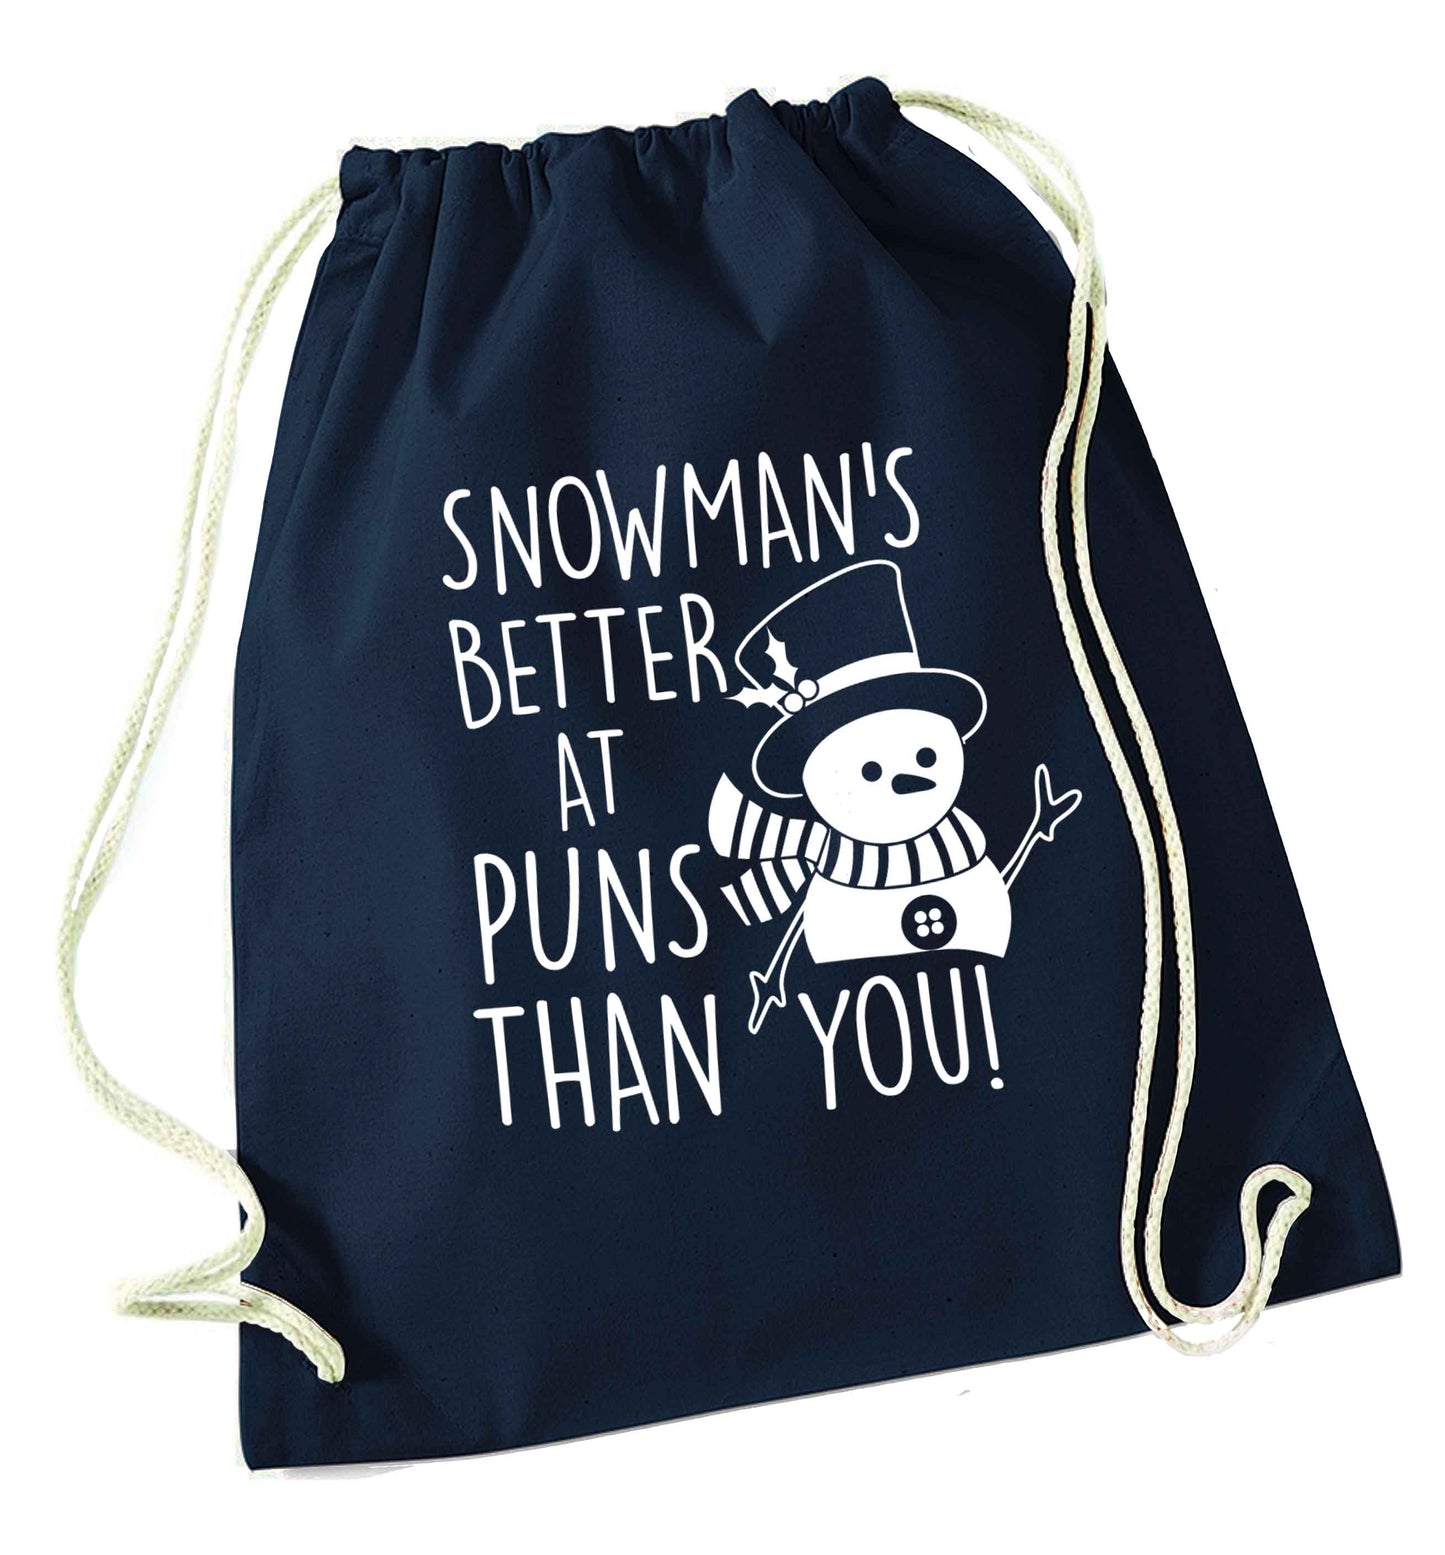 Snowman's Puns You navy drawstring bag